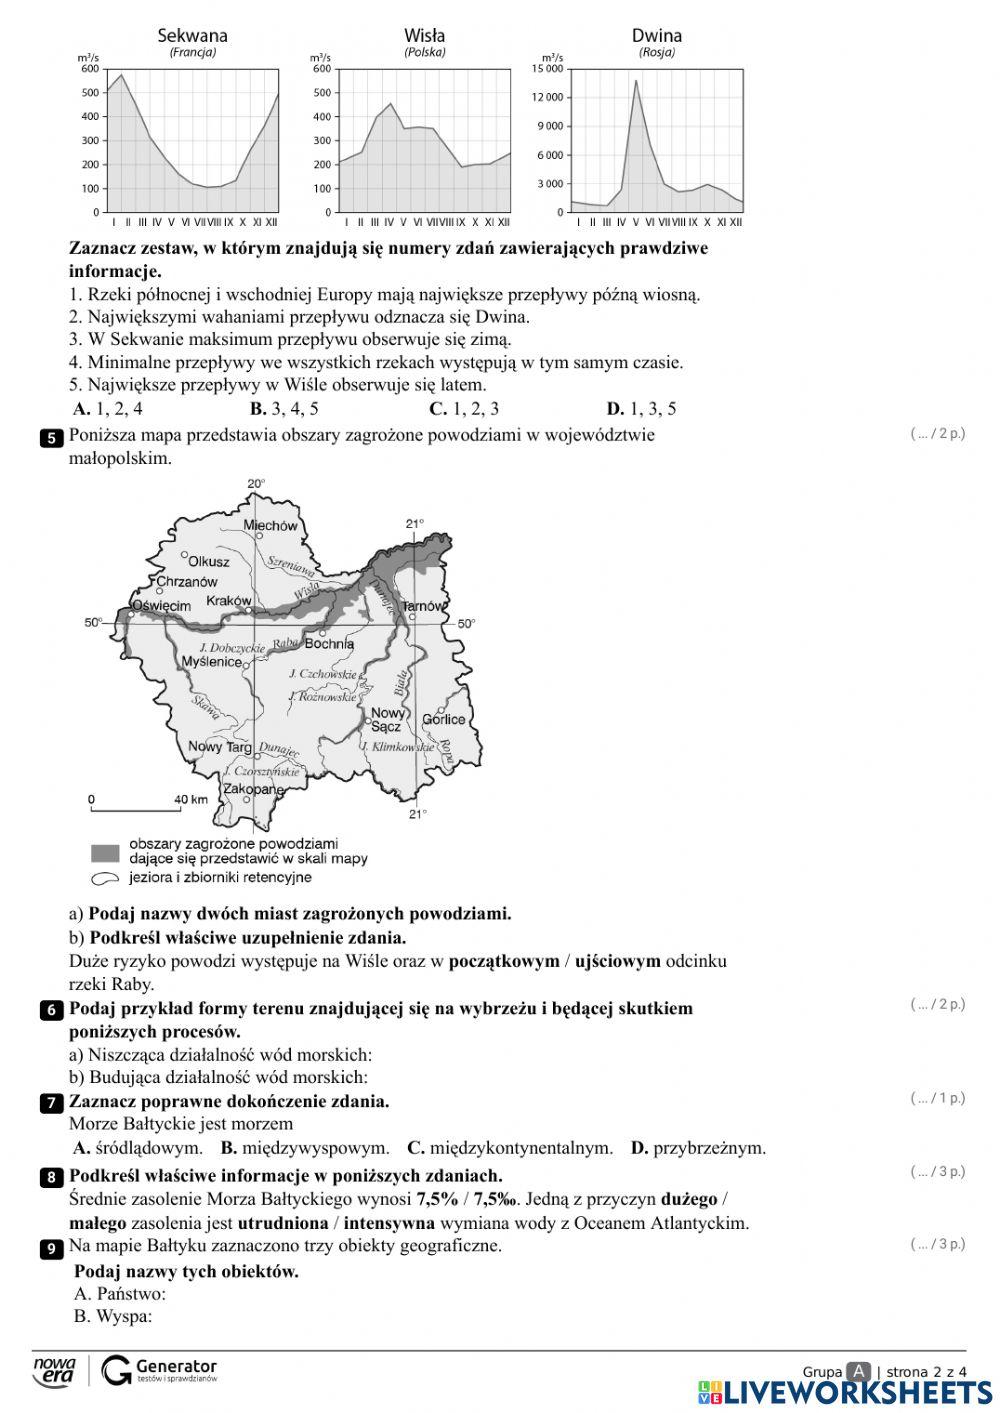 środowisko Przyrodnicze Polski Cz 1 Sprawdzian Sprawdzian Środowisko przyrodnicze Polski 2 kl. 7 worksheet | Live